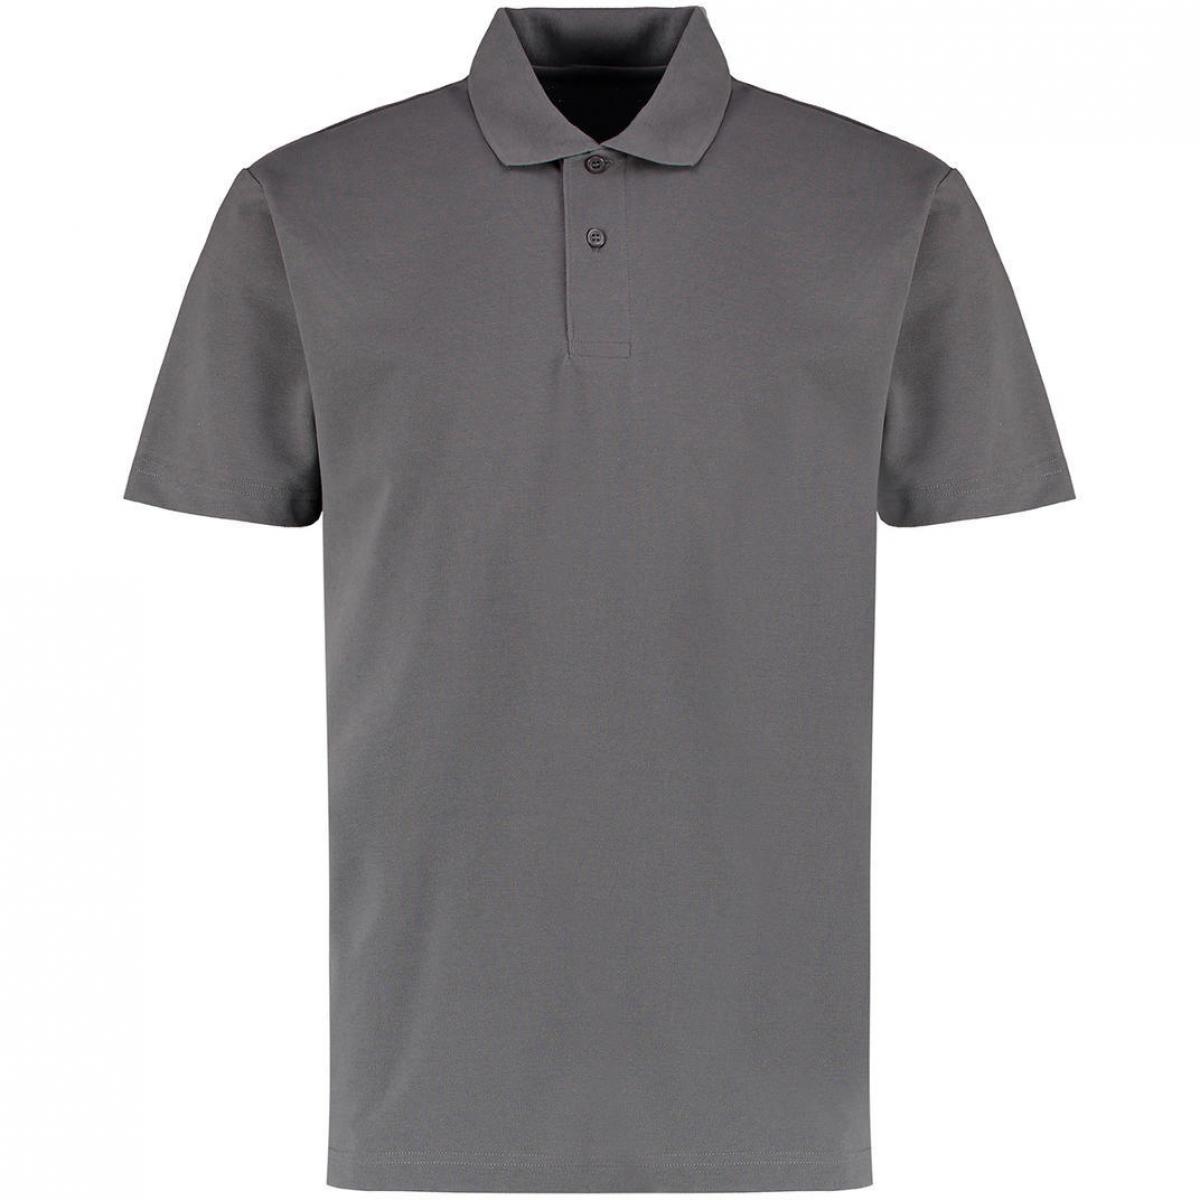 Hersteller: Kustom Kit Herstellernummer: KK422 Artikelbezeichnung: Men's Regular Fit Workforce Poloshirt für Herren Farbe: Charcoal